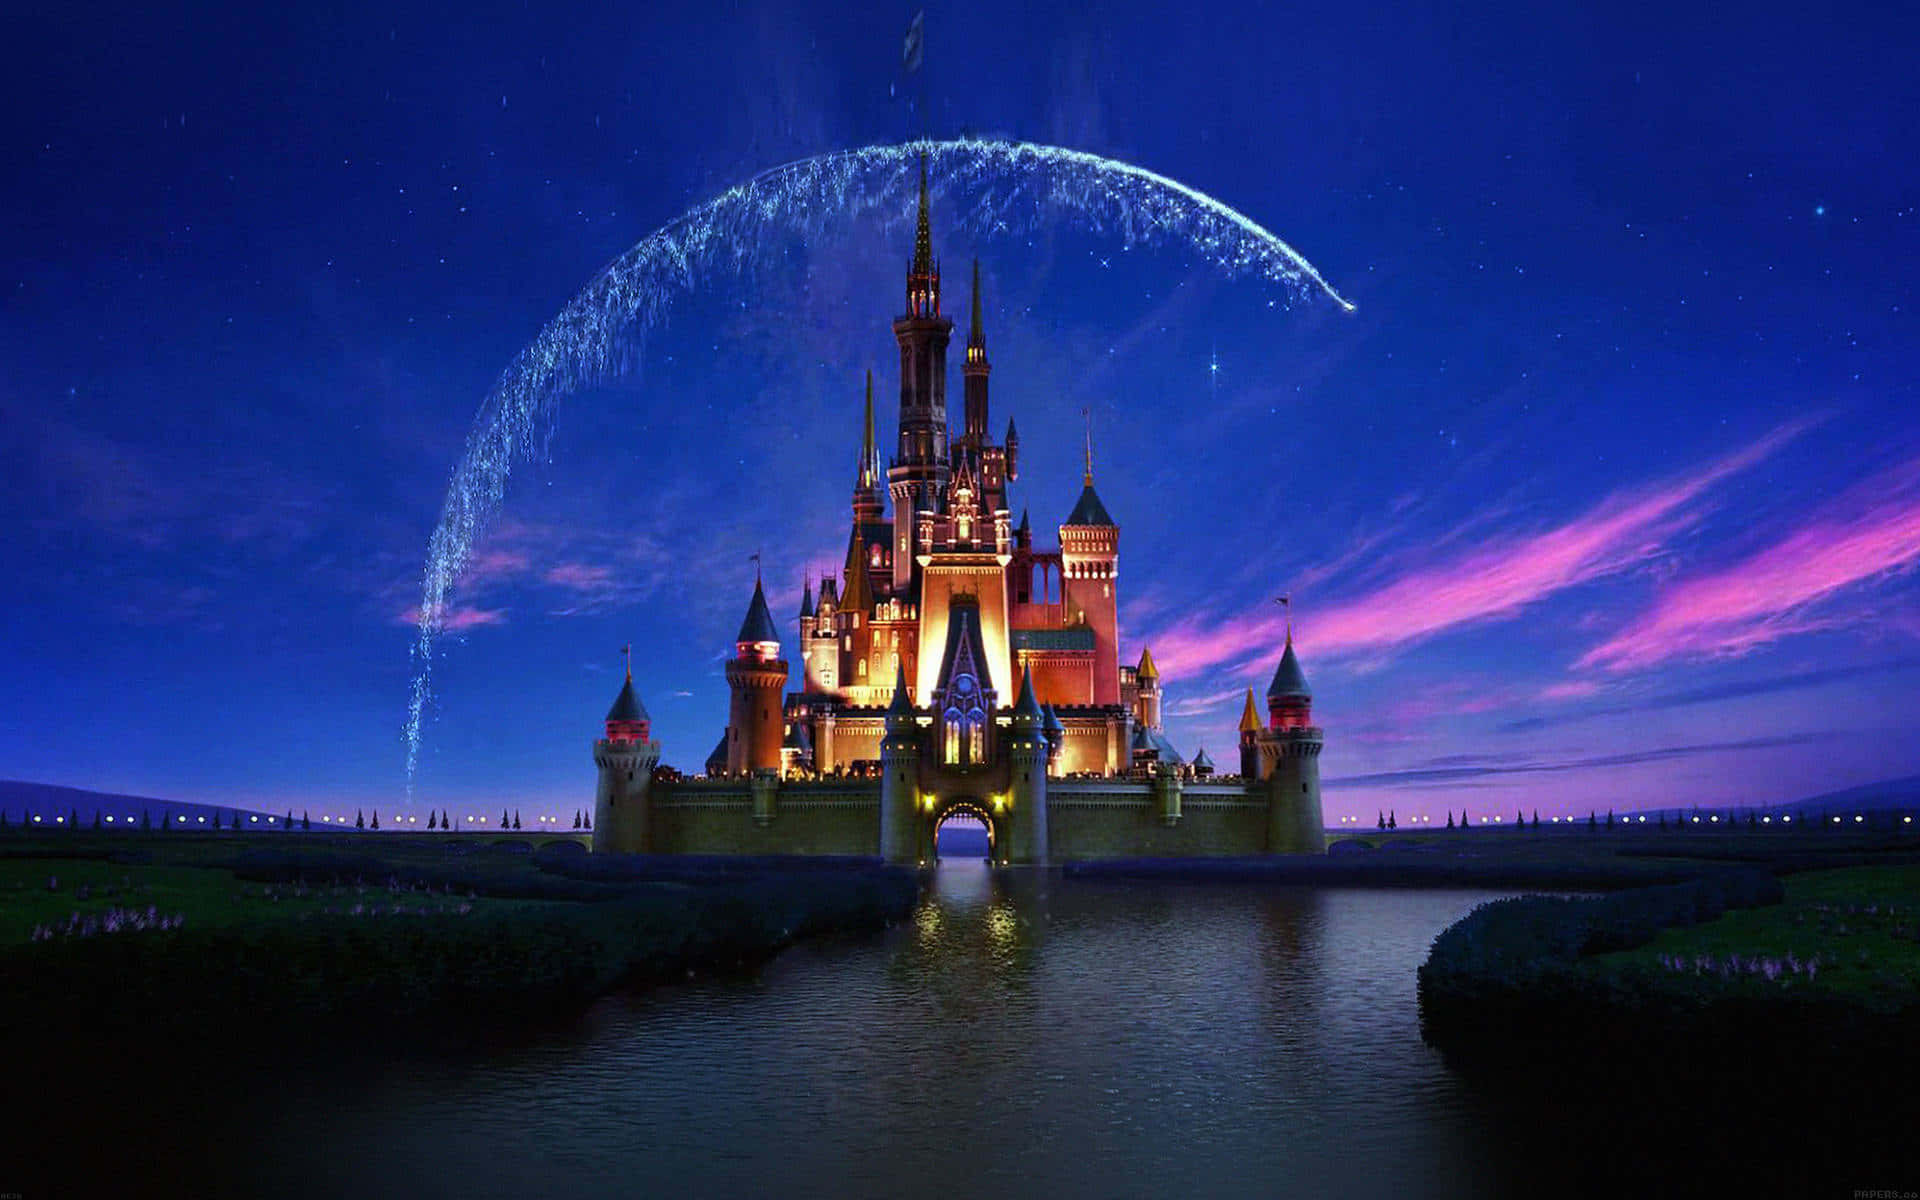 Entraen Un Mundo De Encanto En Disney World Fondo de pantalla